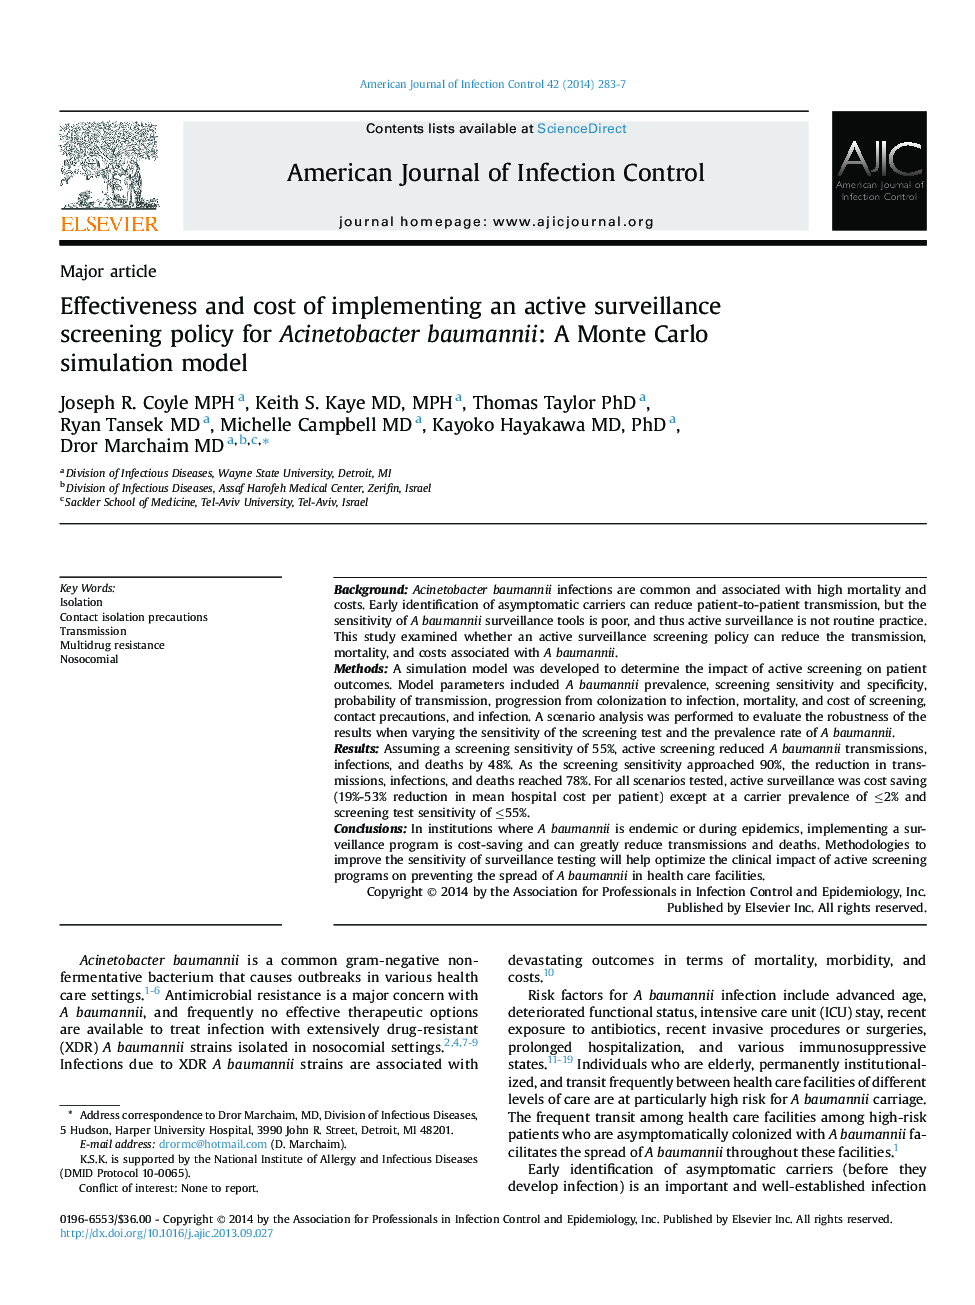 اثربخشی و هزینه اجرای سیاست غربالگری نظارت فعال برای Acinetobacter baumannii: یک مدل شبیه سازی مونت کارلو